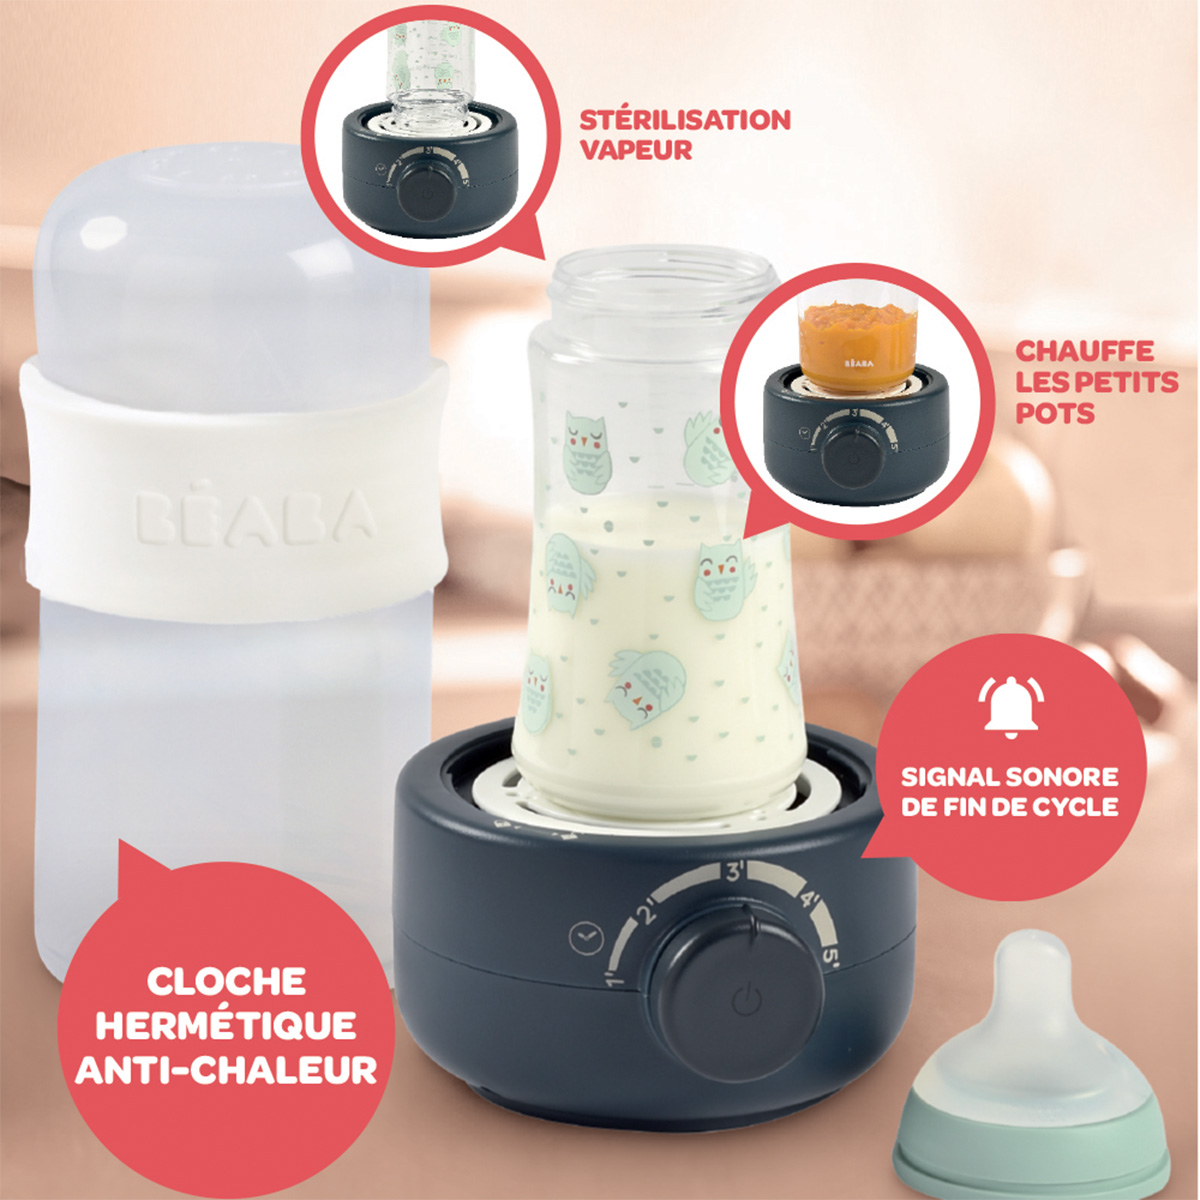 Beaba Chauffe-biberon/stérilisateur de lait pour bébé seconde 